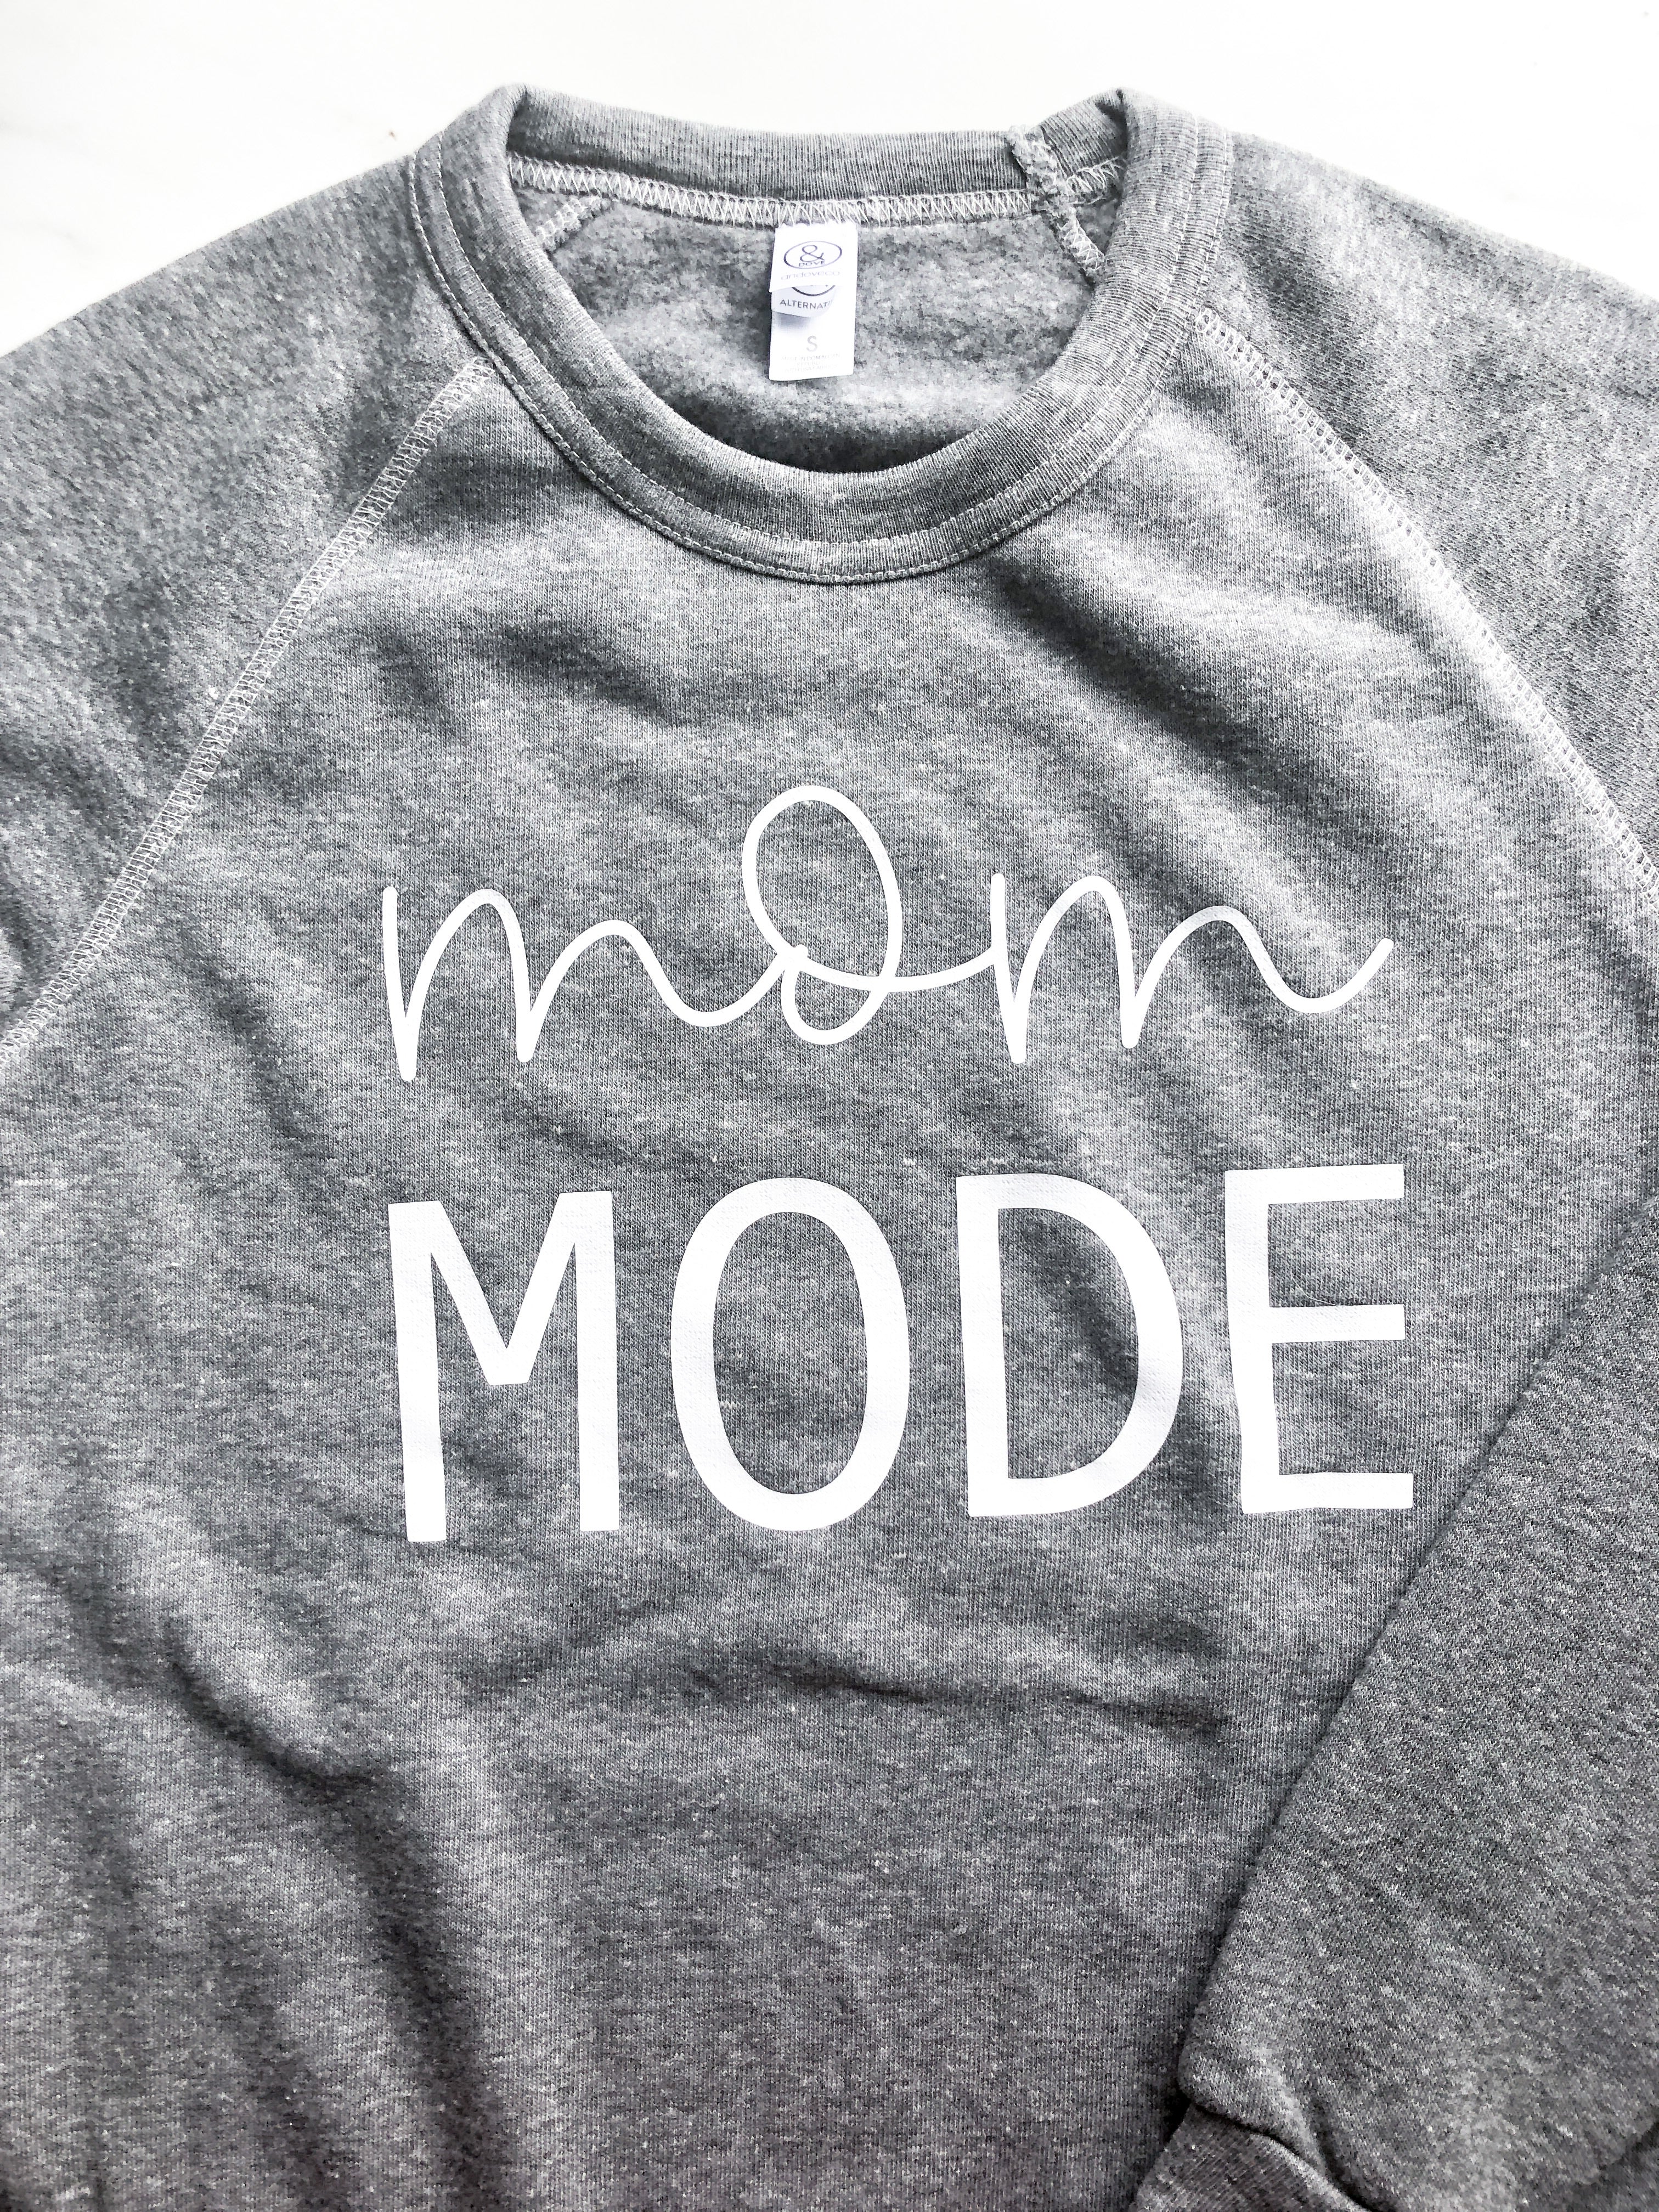 Mom Mode Crewneck Sweater - andoveco